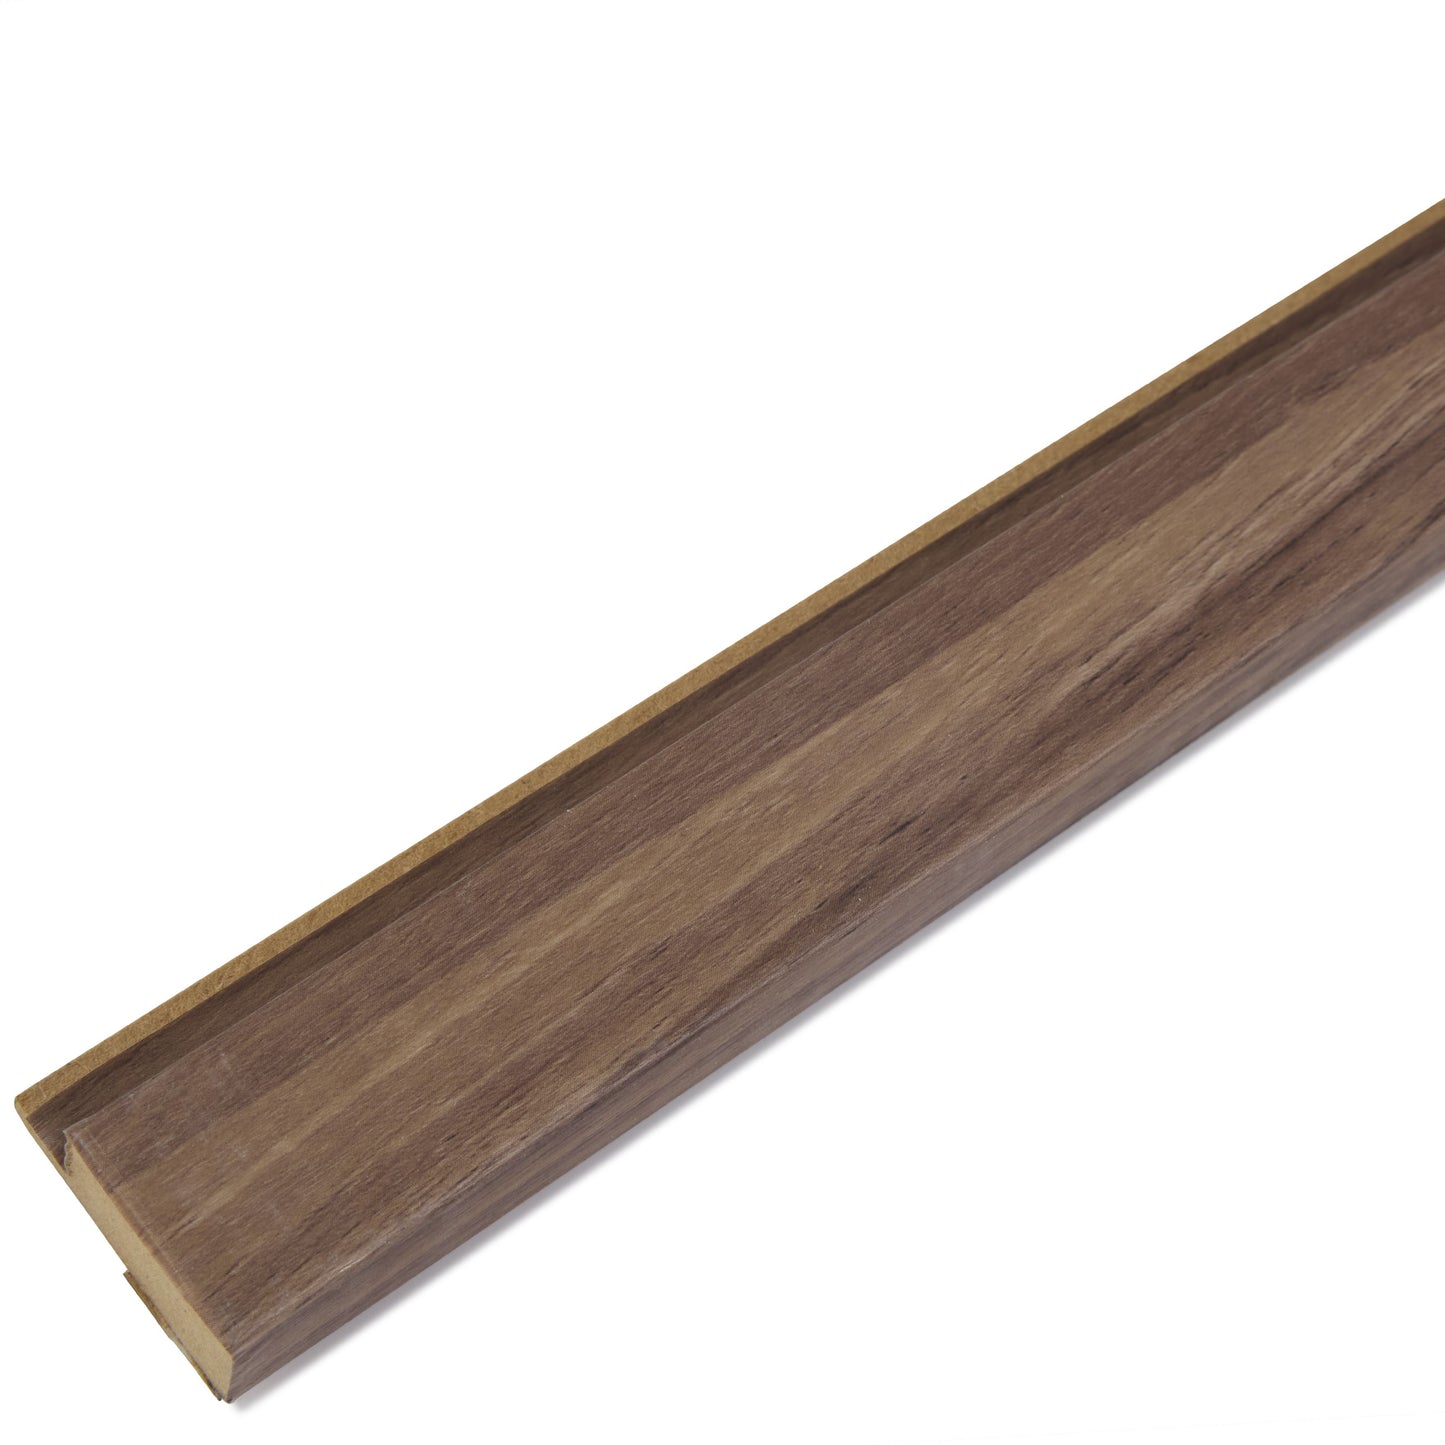 Luxe Acoustic Ceviz Walnut 3D Slat Panel Wall Profile - MDF - Industry Tile